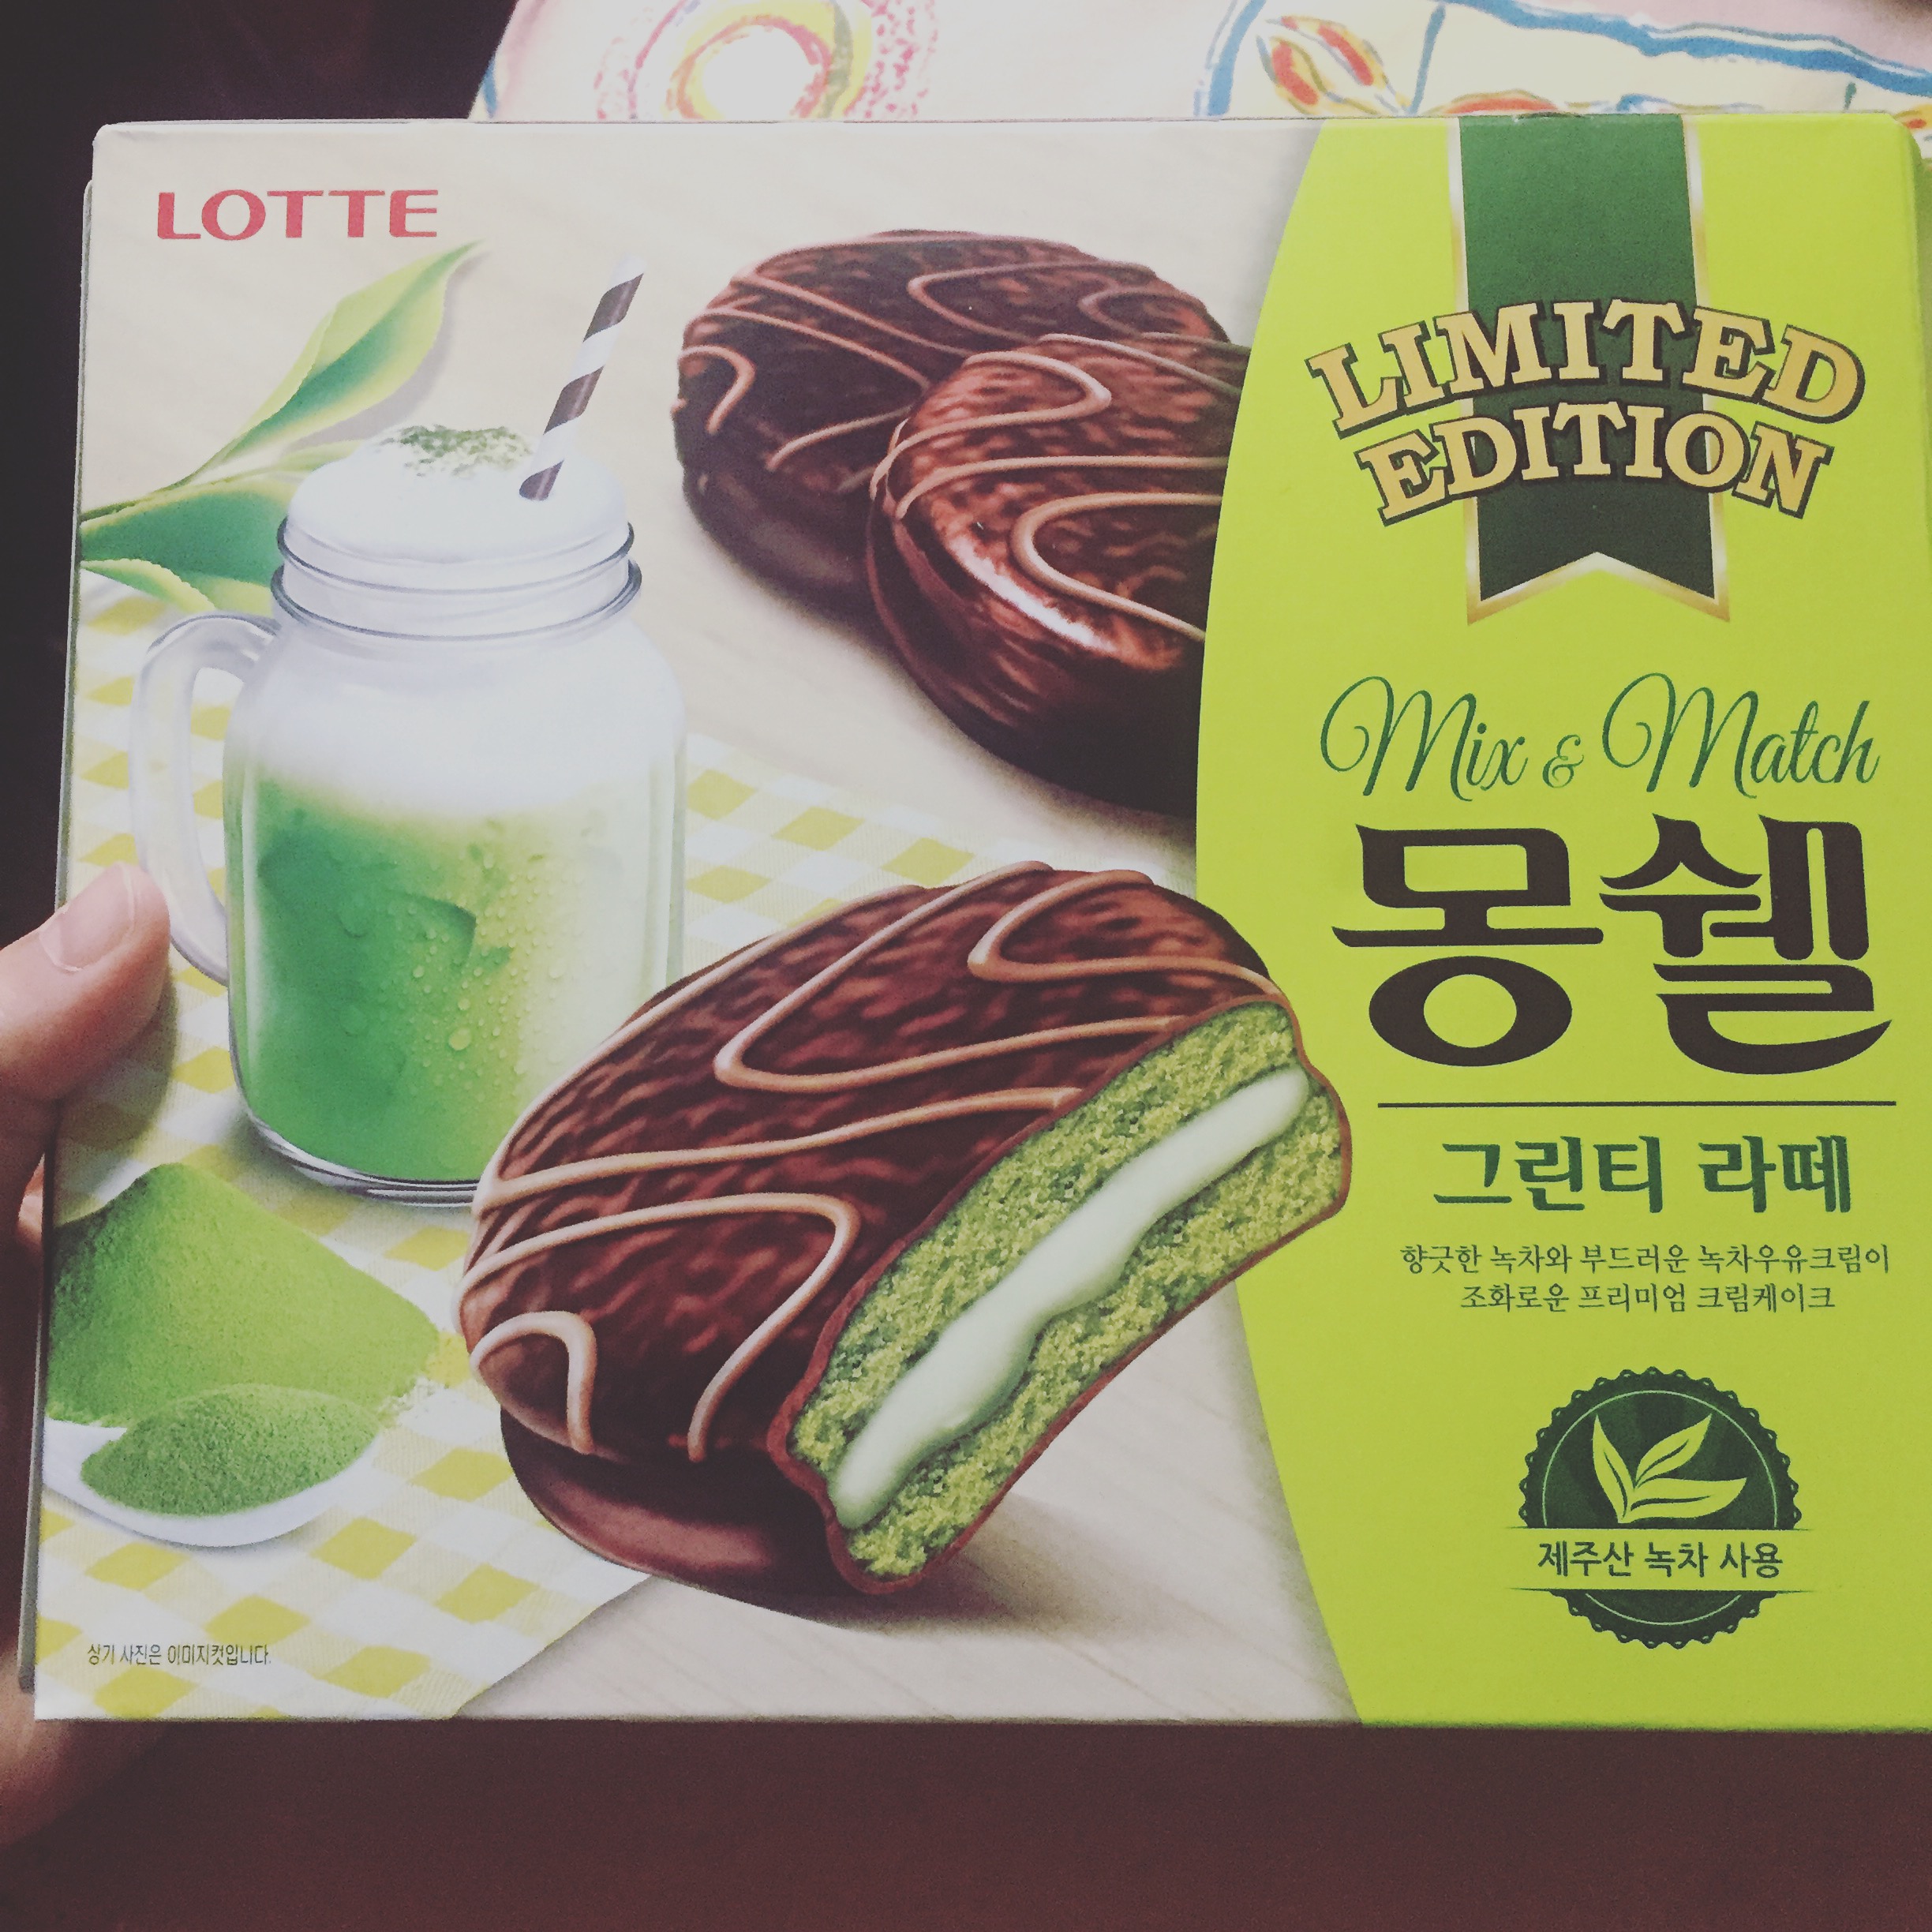 韓国旅行のお土産に最適♪ロッテのチョコパイ☆新味のグリーンティラテ味を食べてみた。